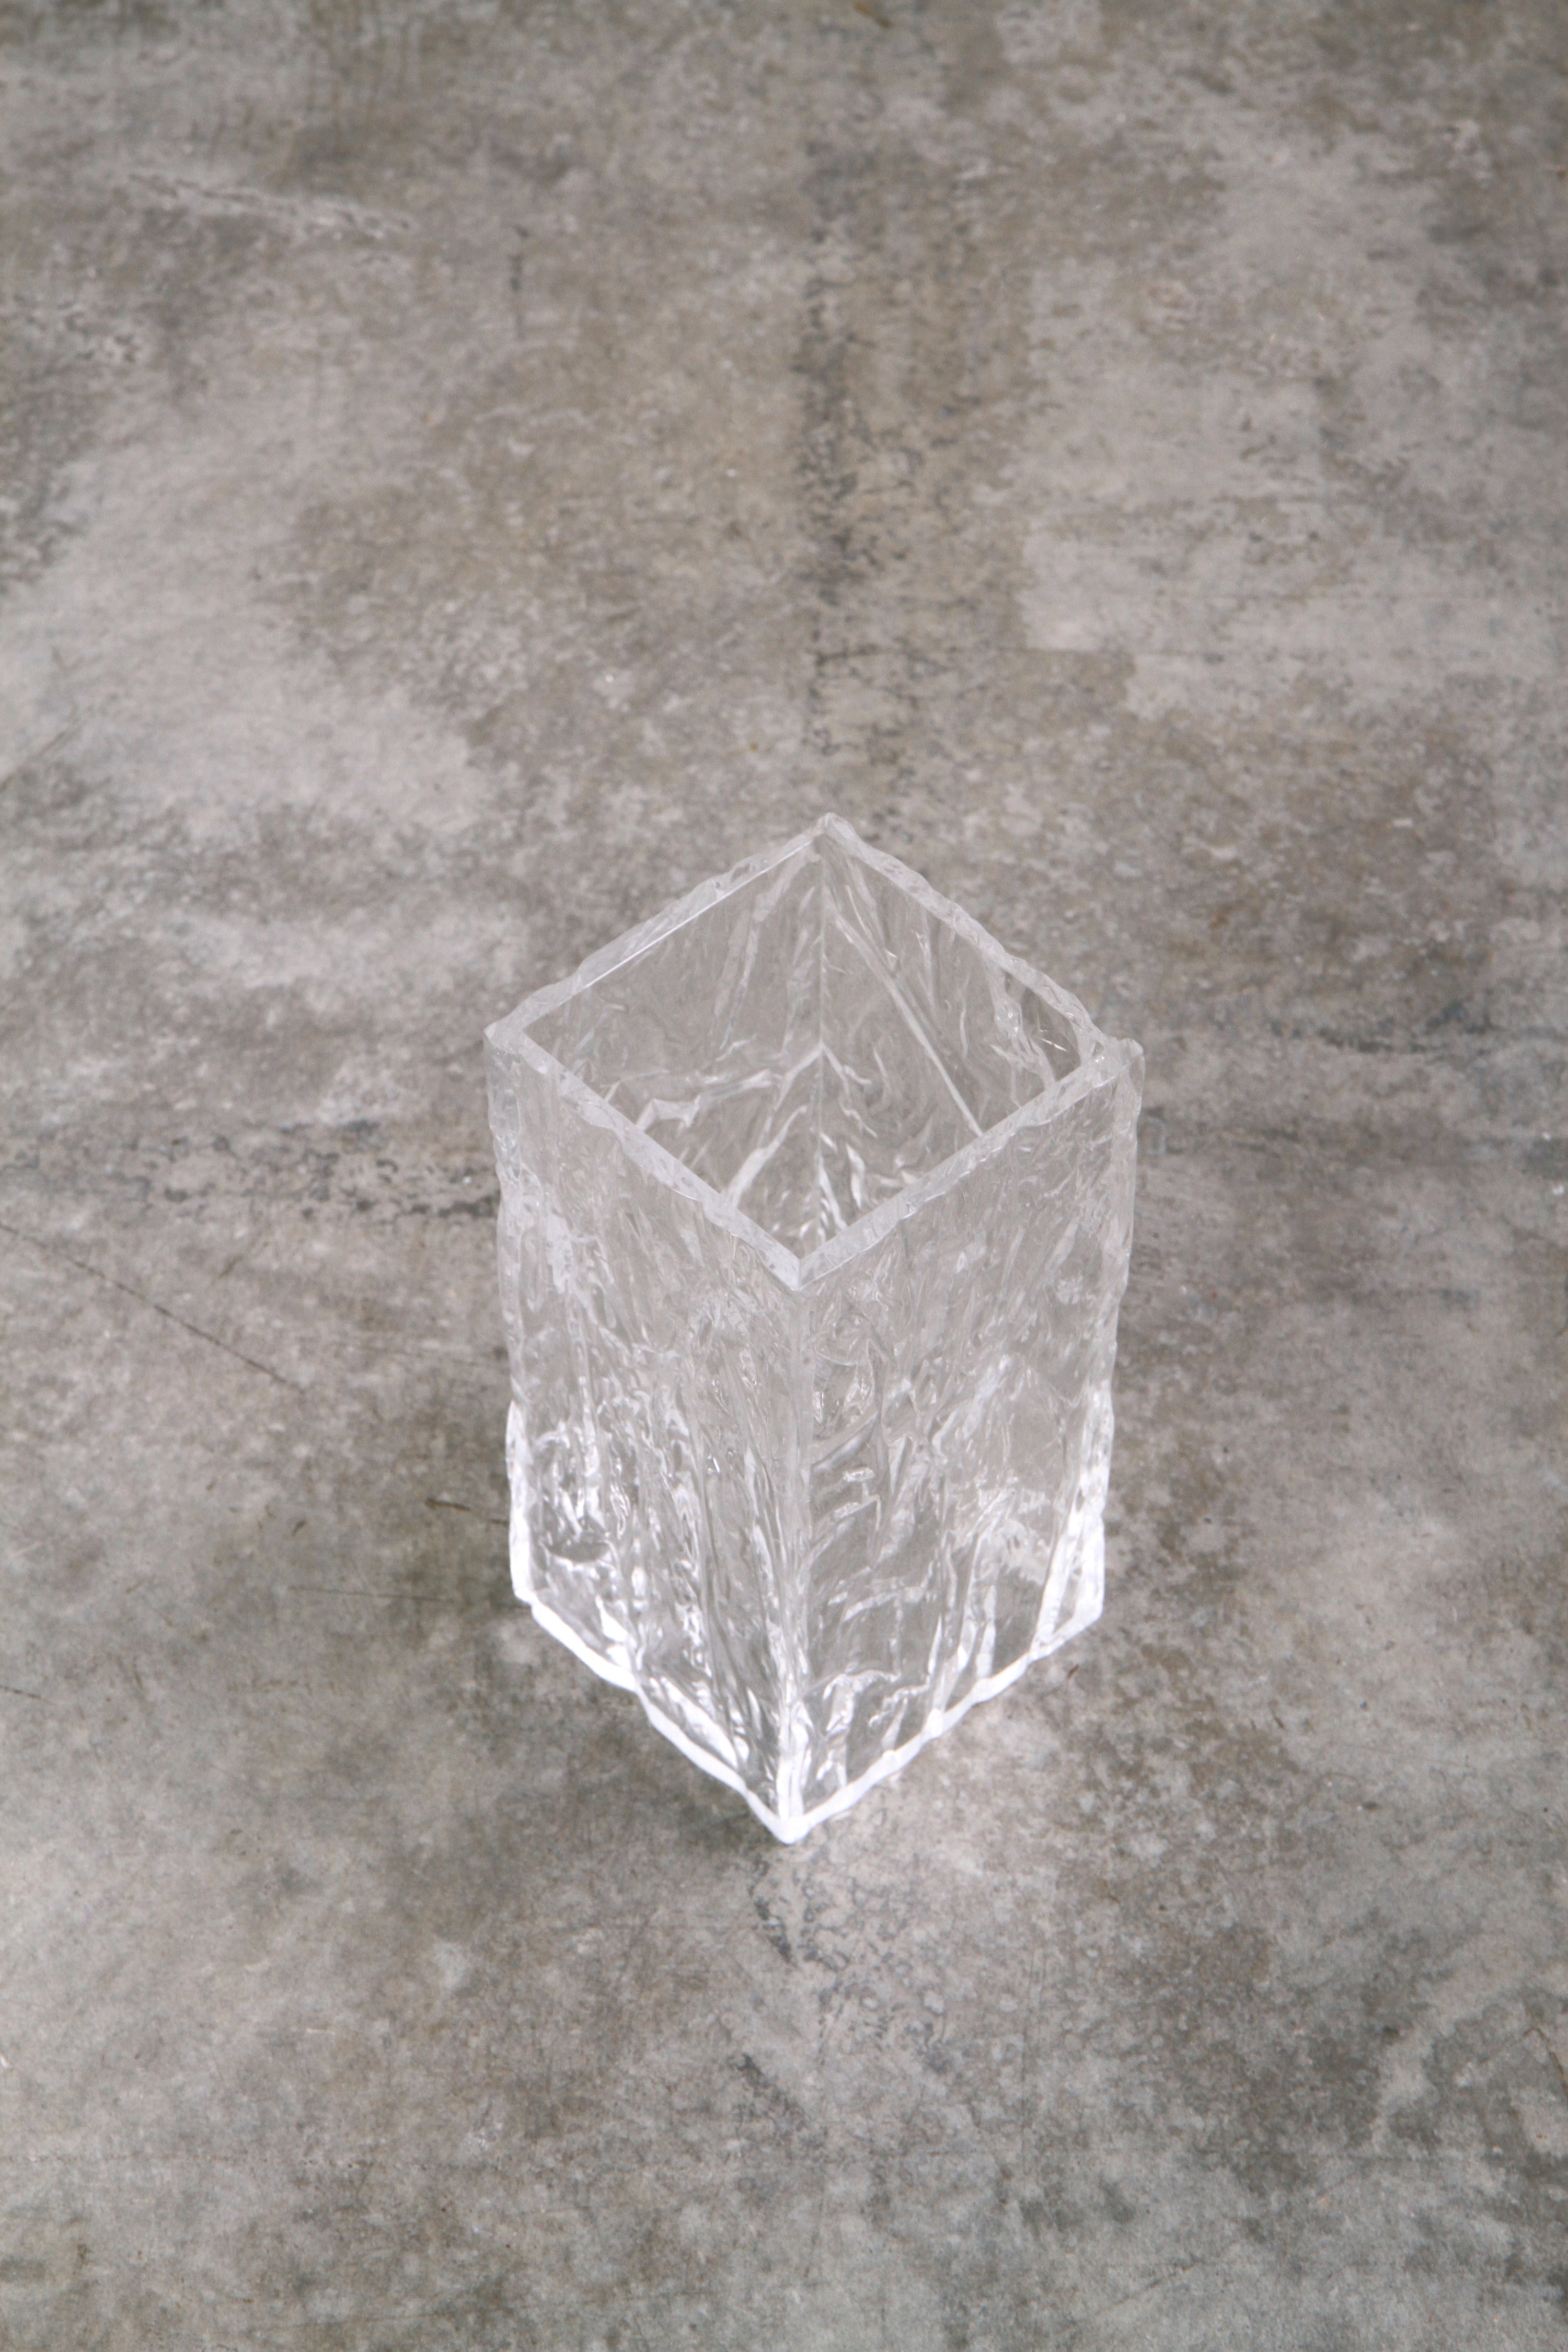 The CRUSHED ICE vase